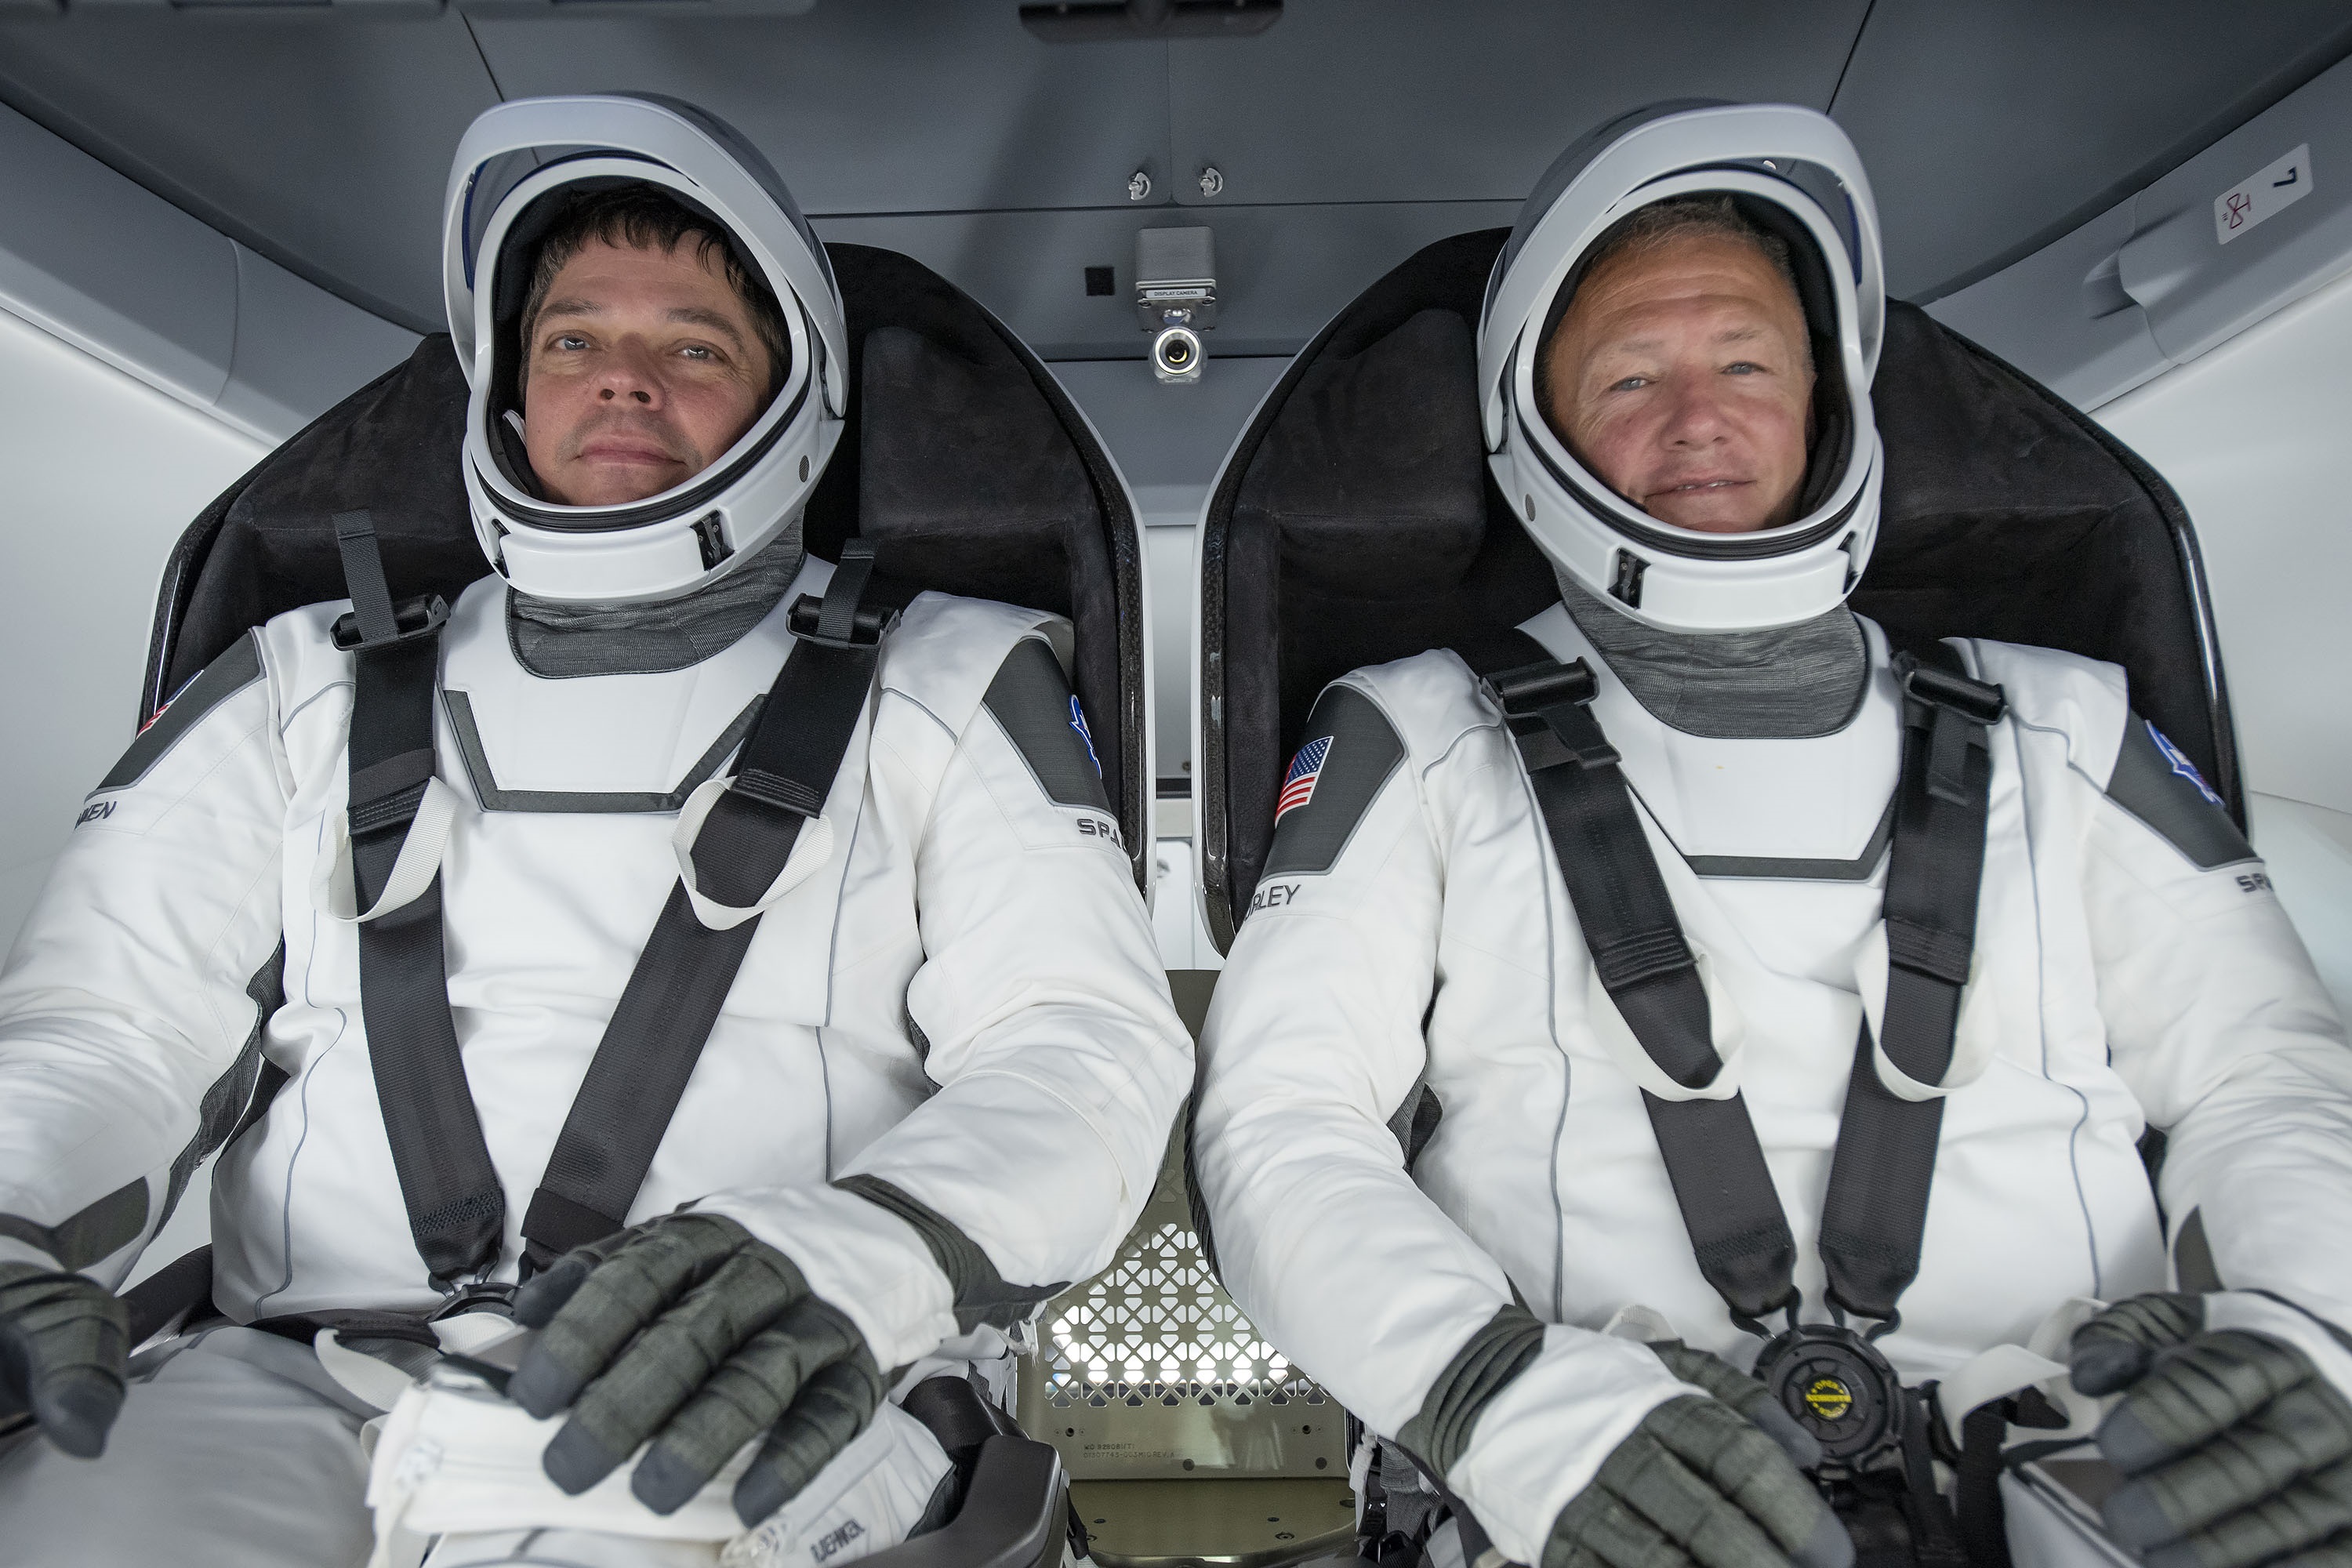 Nasa astronauts Robert Behnken and Douglas Hurley have splashed down 